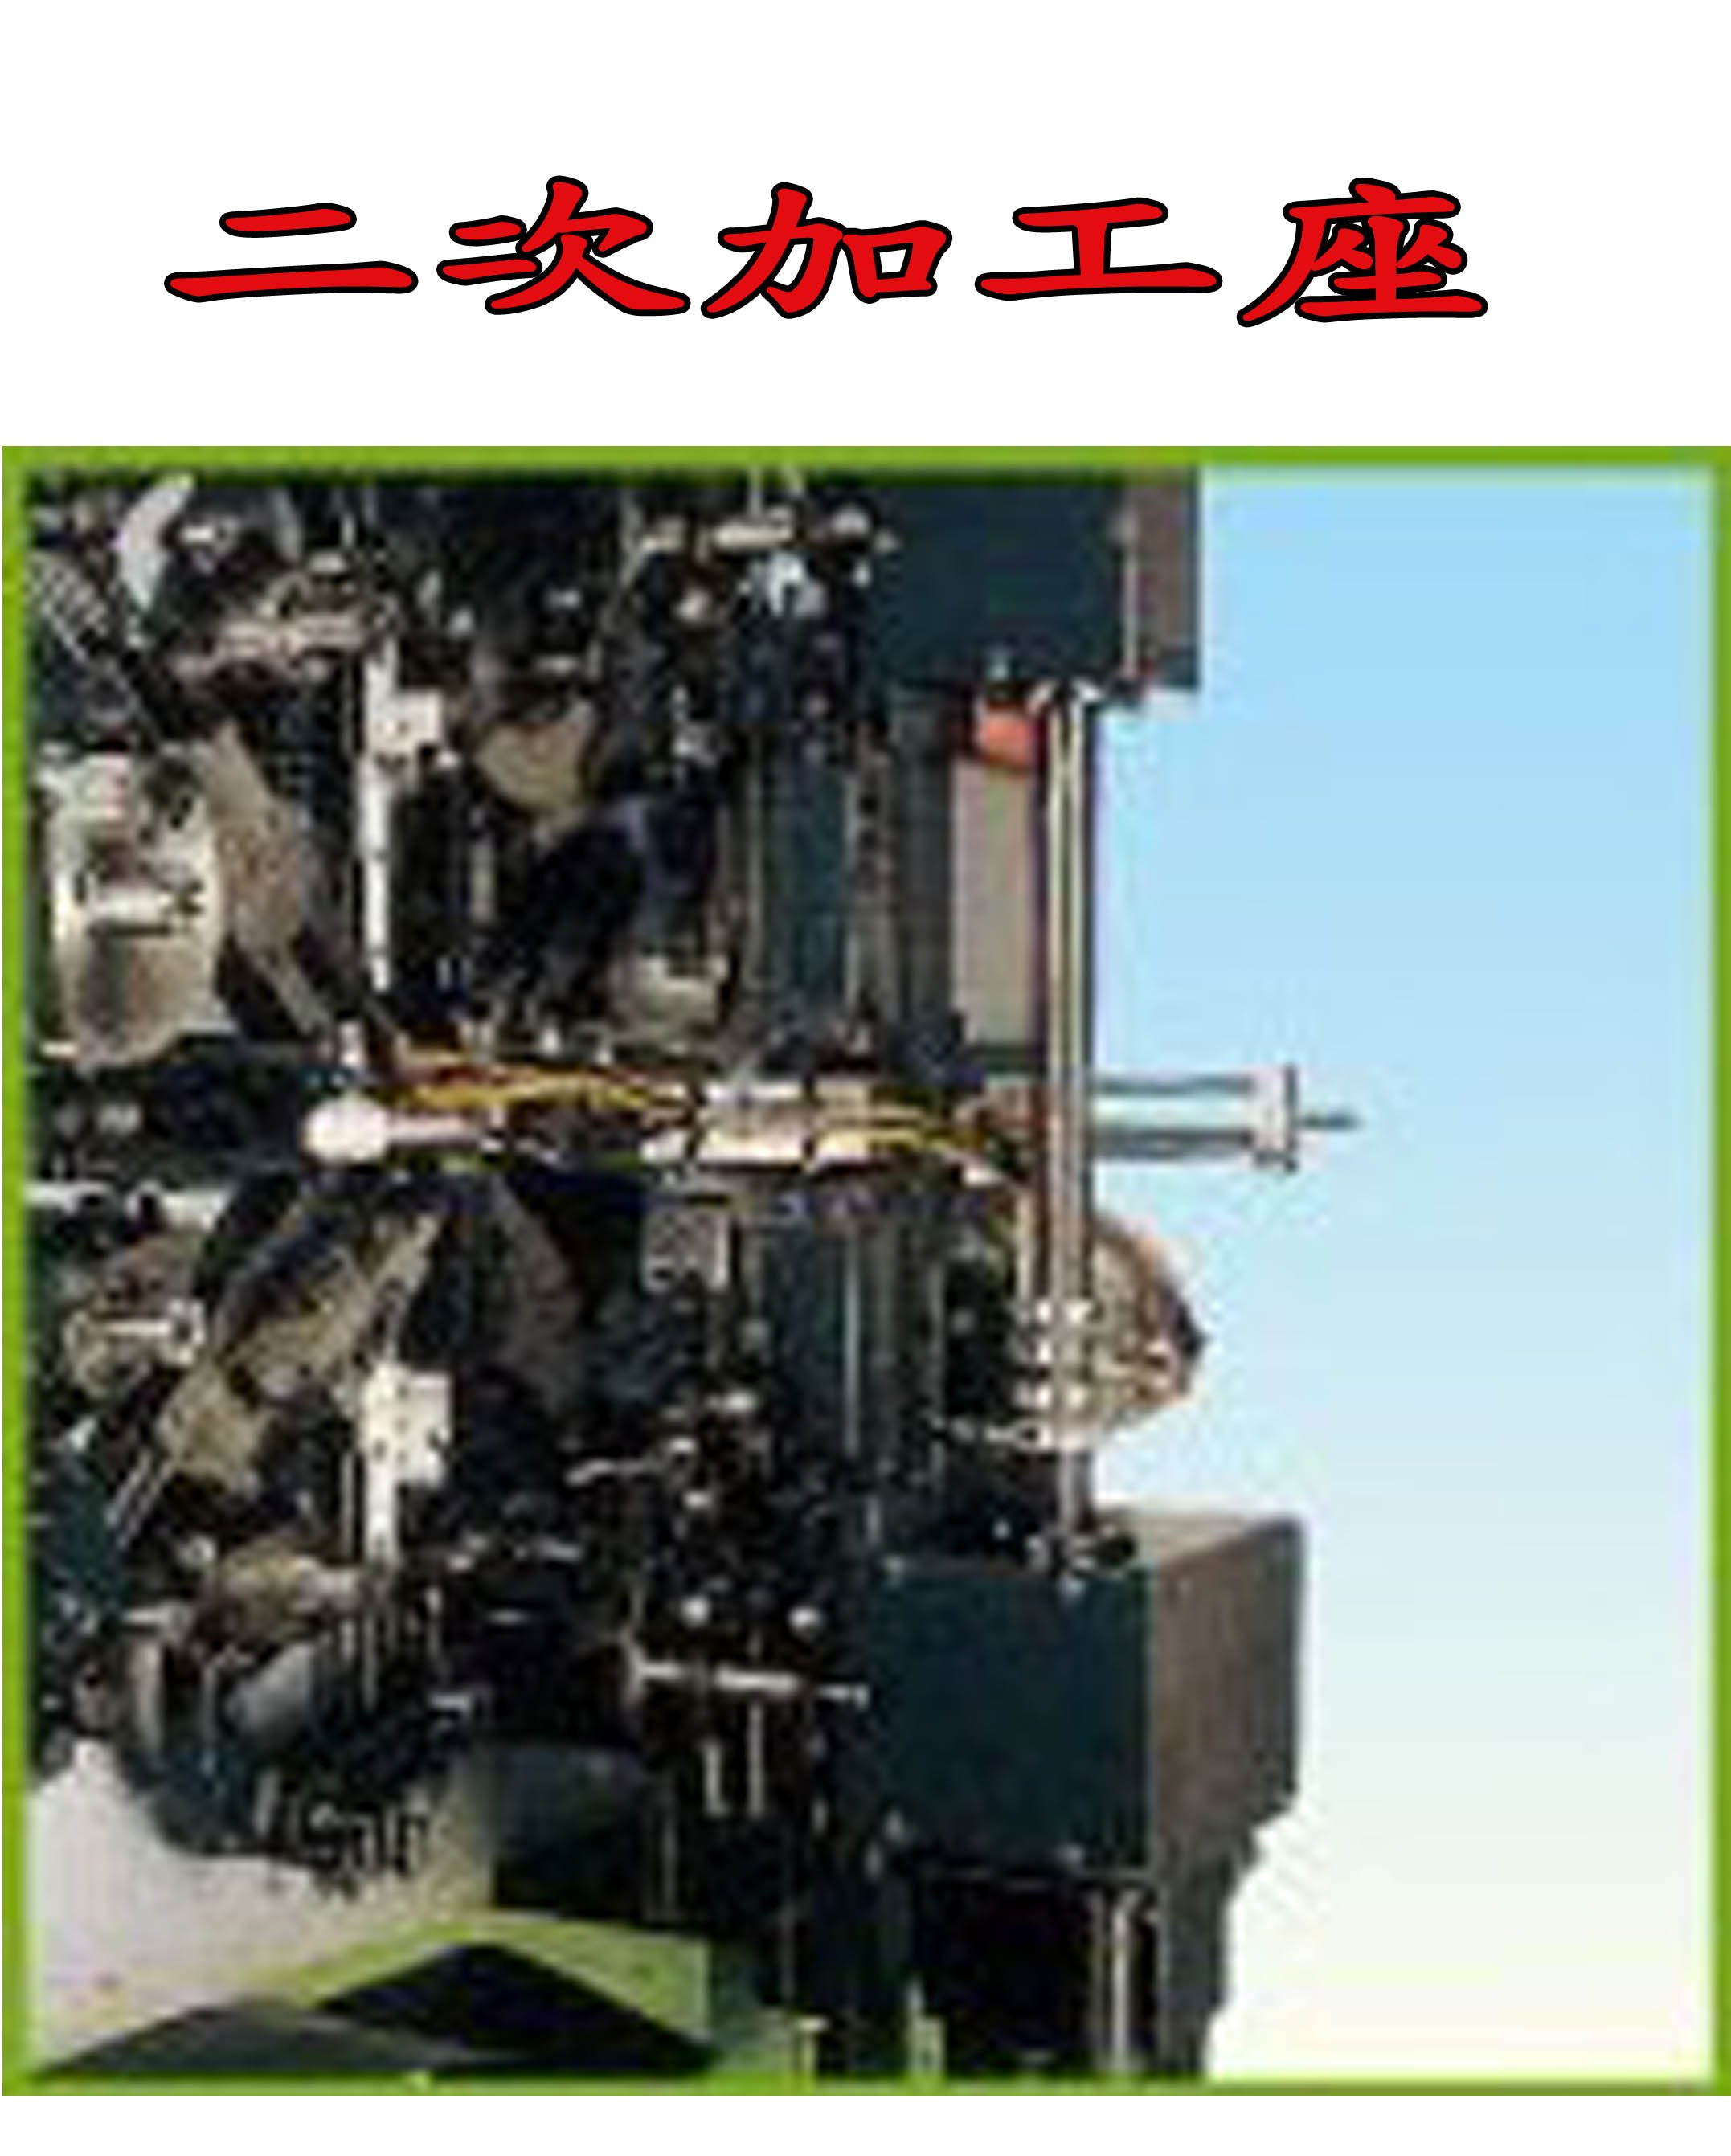 弹簧机 EN-CNC502S